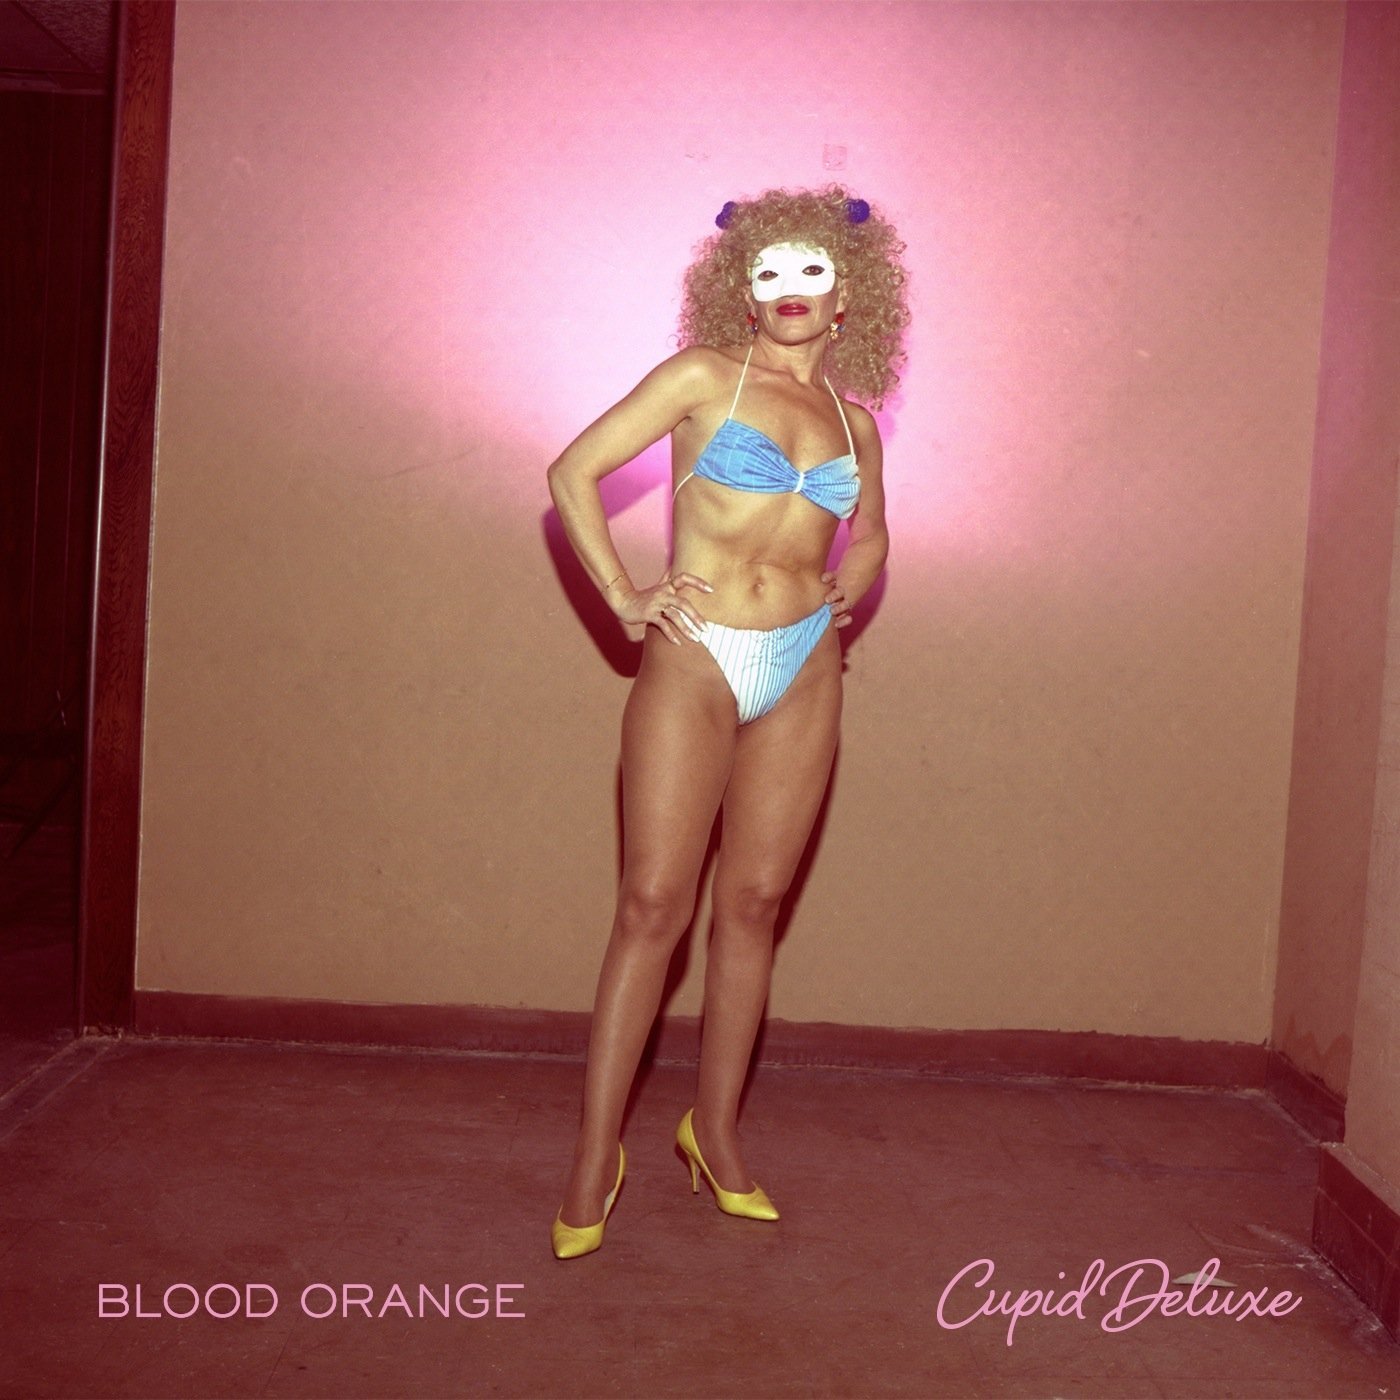 blood orange - coastal grooves 2011 download